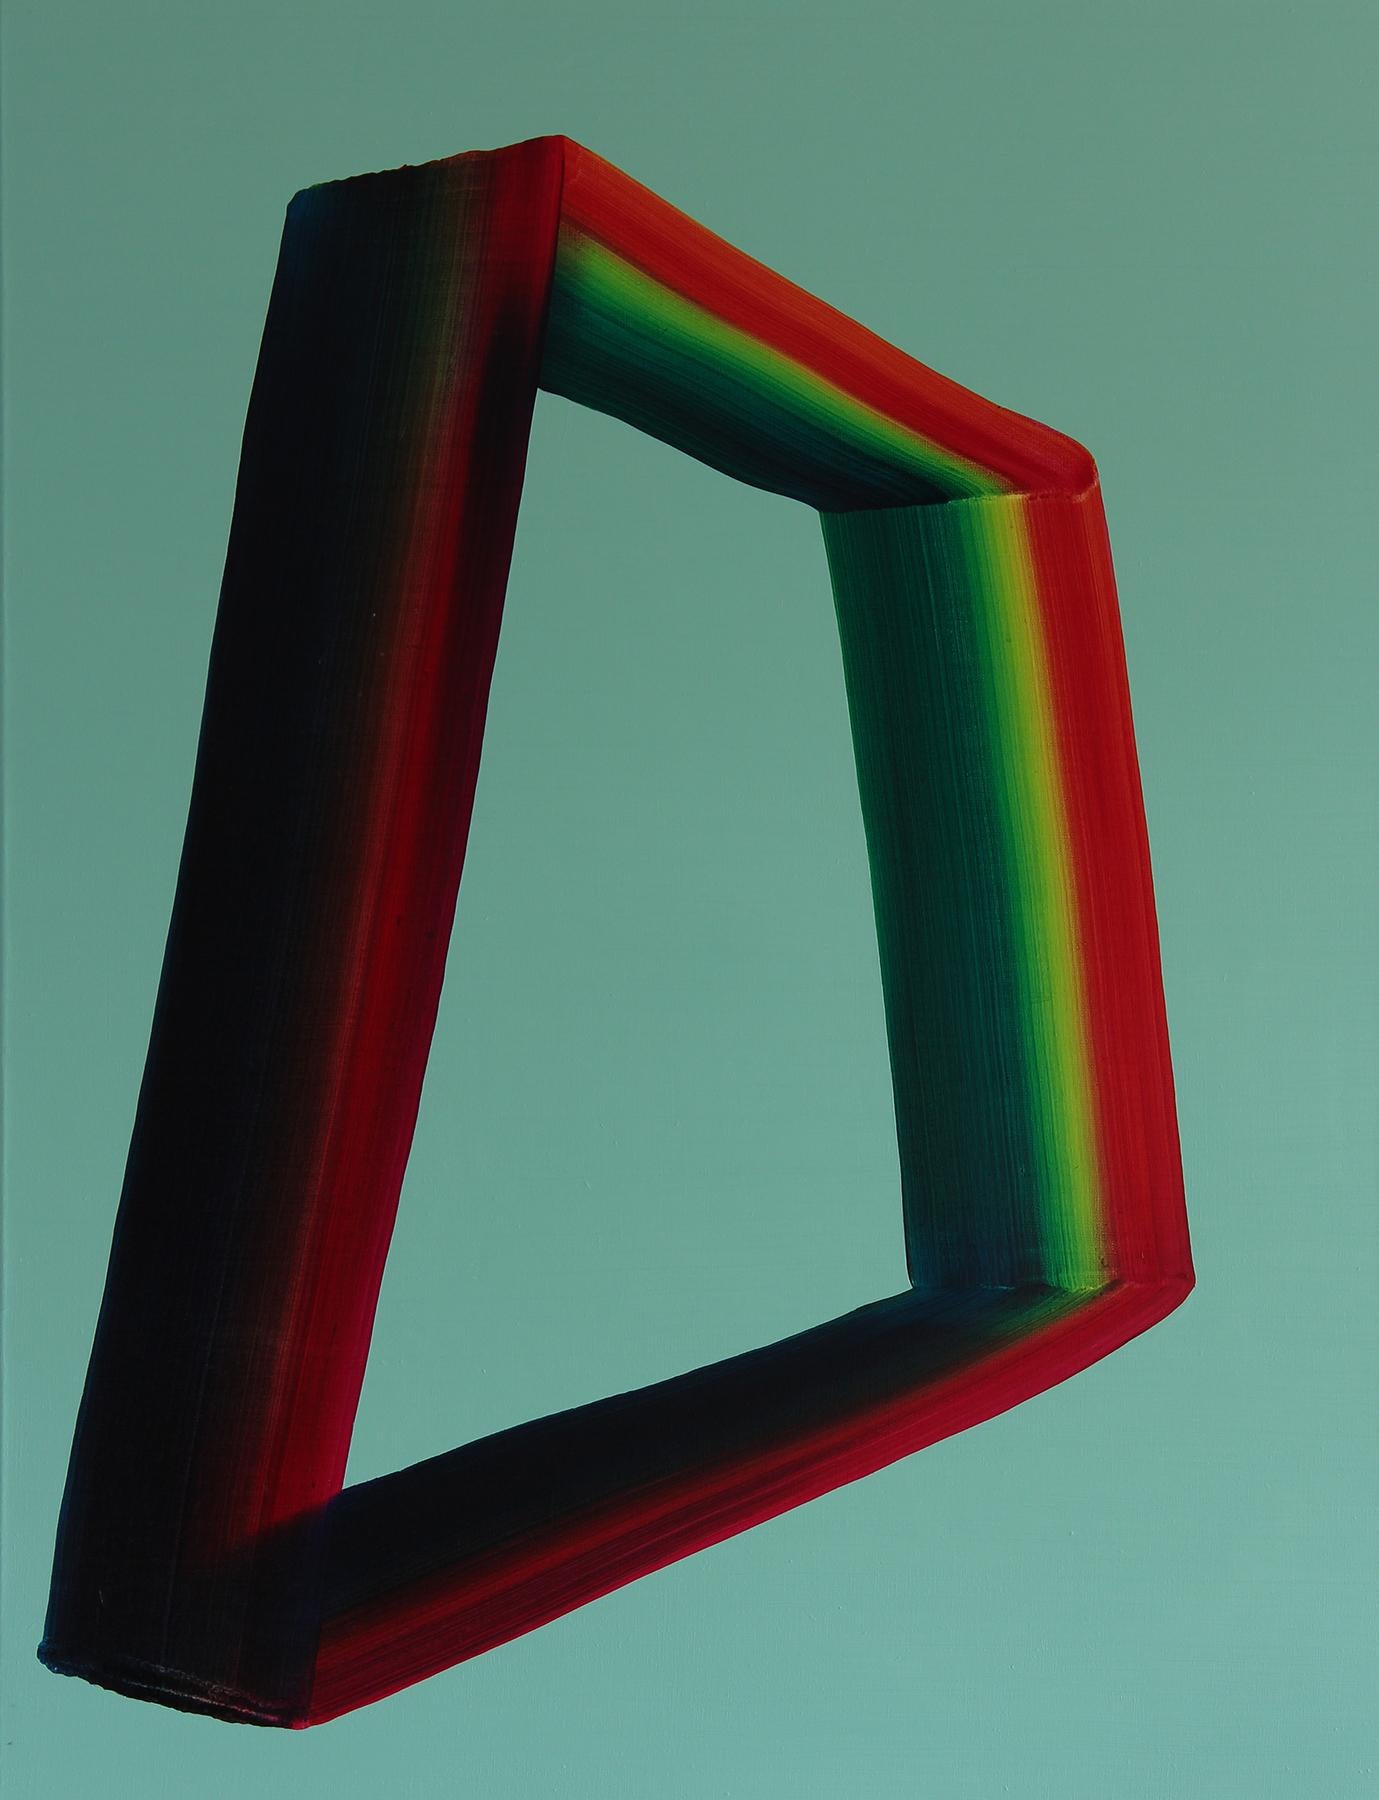 Abstract Painting Tomasz Prymon - Sans titre 06 -  Peinture abstraite et colorée contemporaine, légèreté des textiles